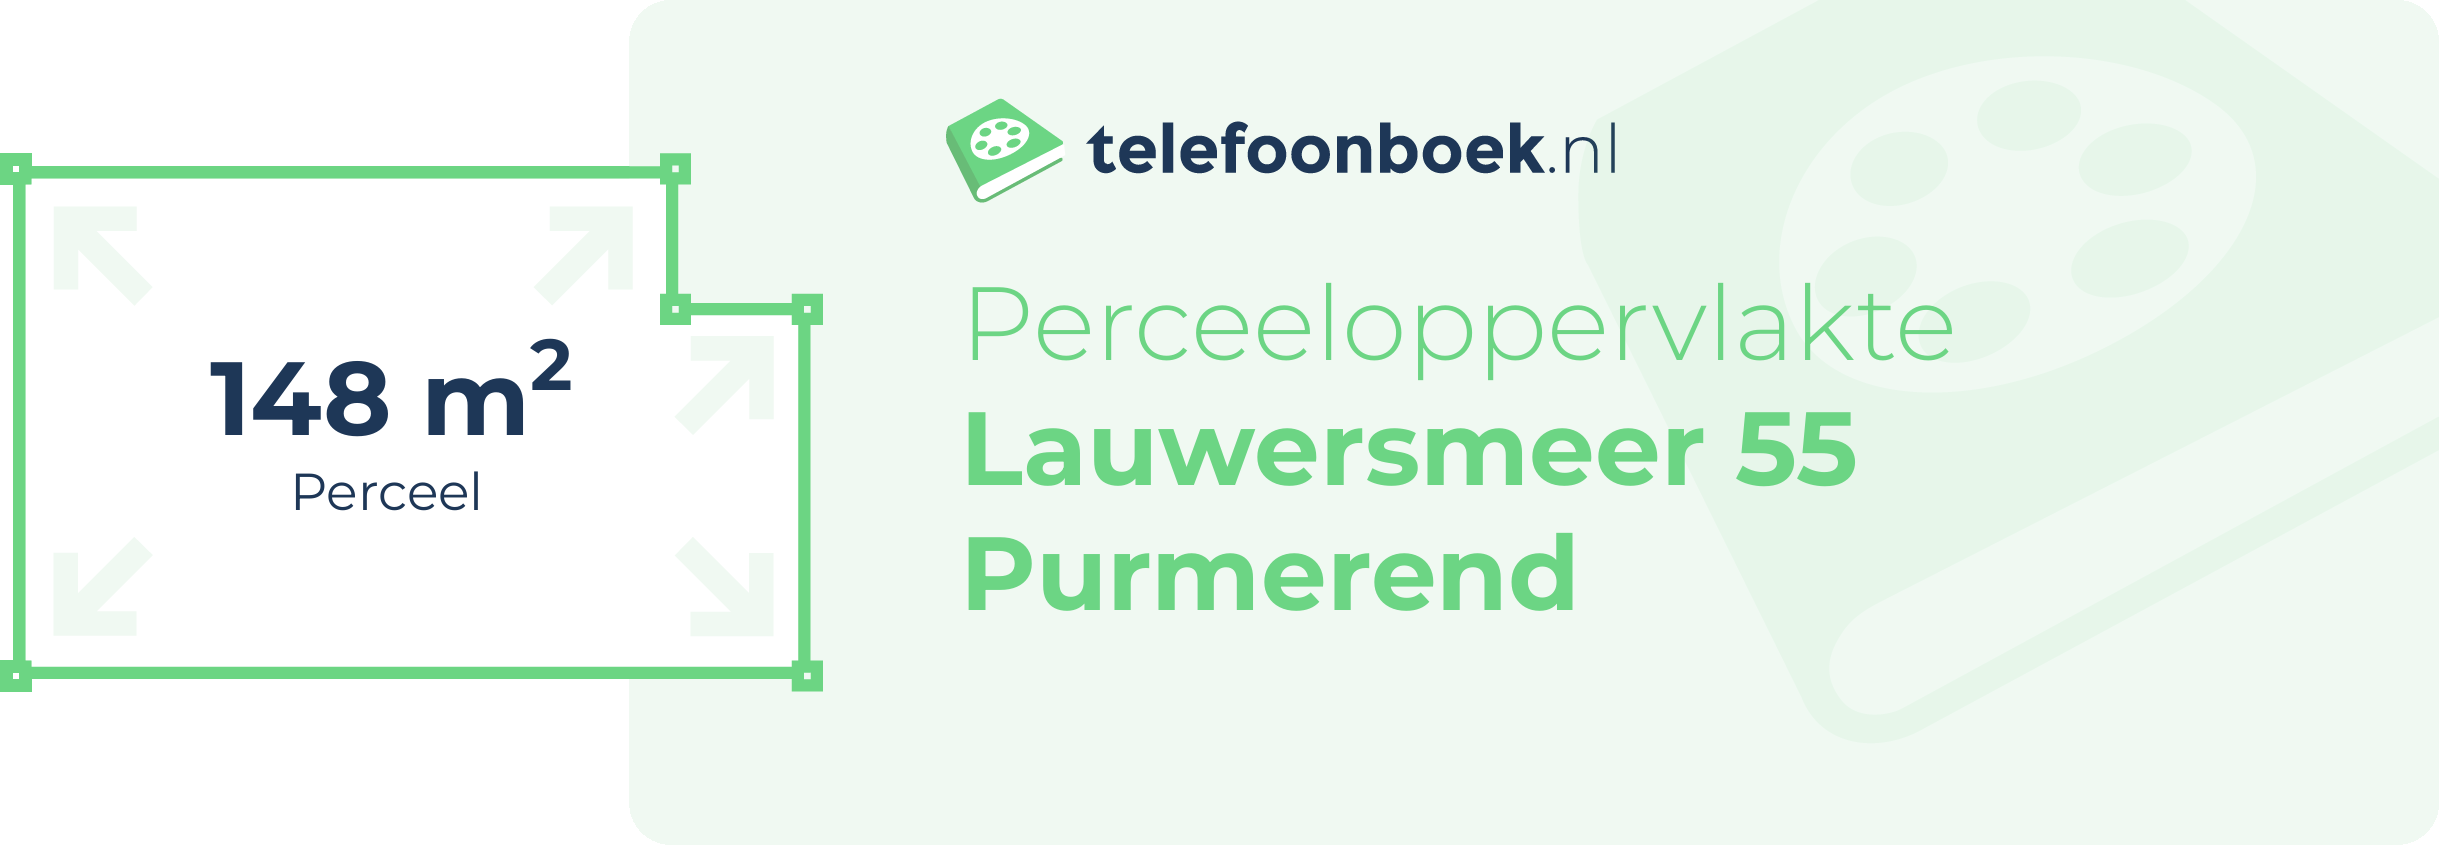 Perceeloppervlakte Lauwersmeer 55 Purmerend